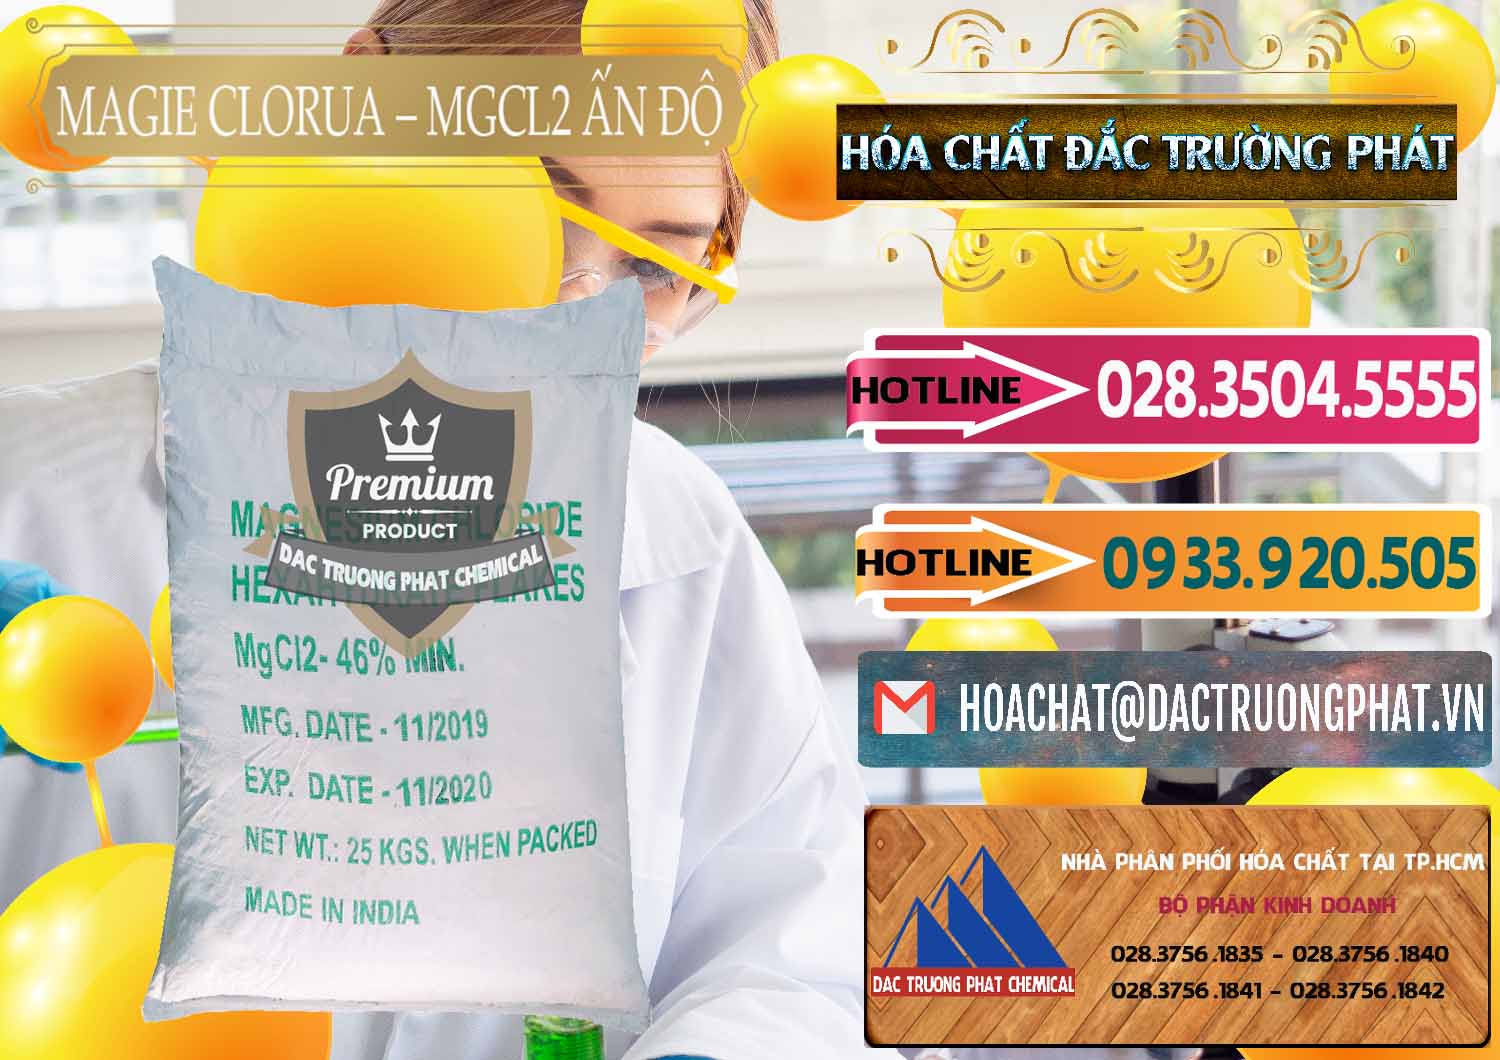 Cty bán _ cung cấp Magie Clorua – MGCL2 46% Dạng Vảy Ấn Độ India - 0092 - Nhà phân phối - cung cấp hóa chất tại TP.HCM - dactruongphat.vn